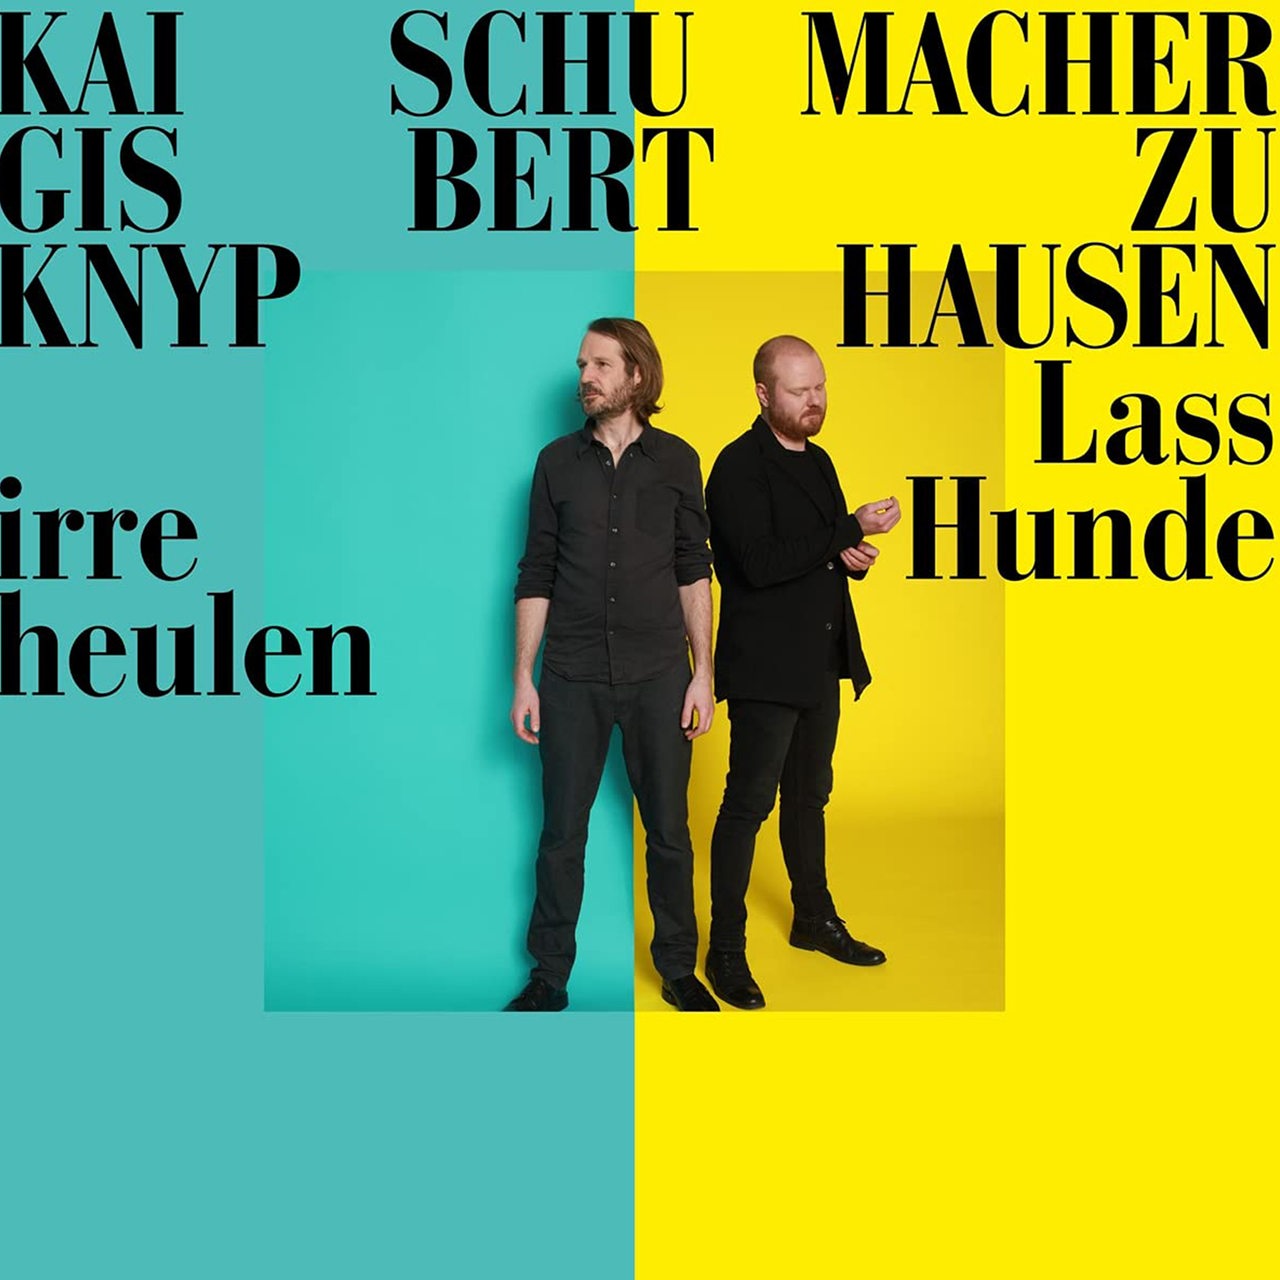 CD Cover von Gisbert zu Knyphausen & Kai Schumacher "Lass irre Hund heulen"